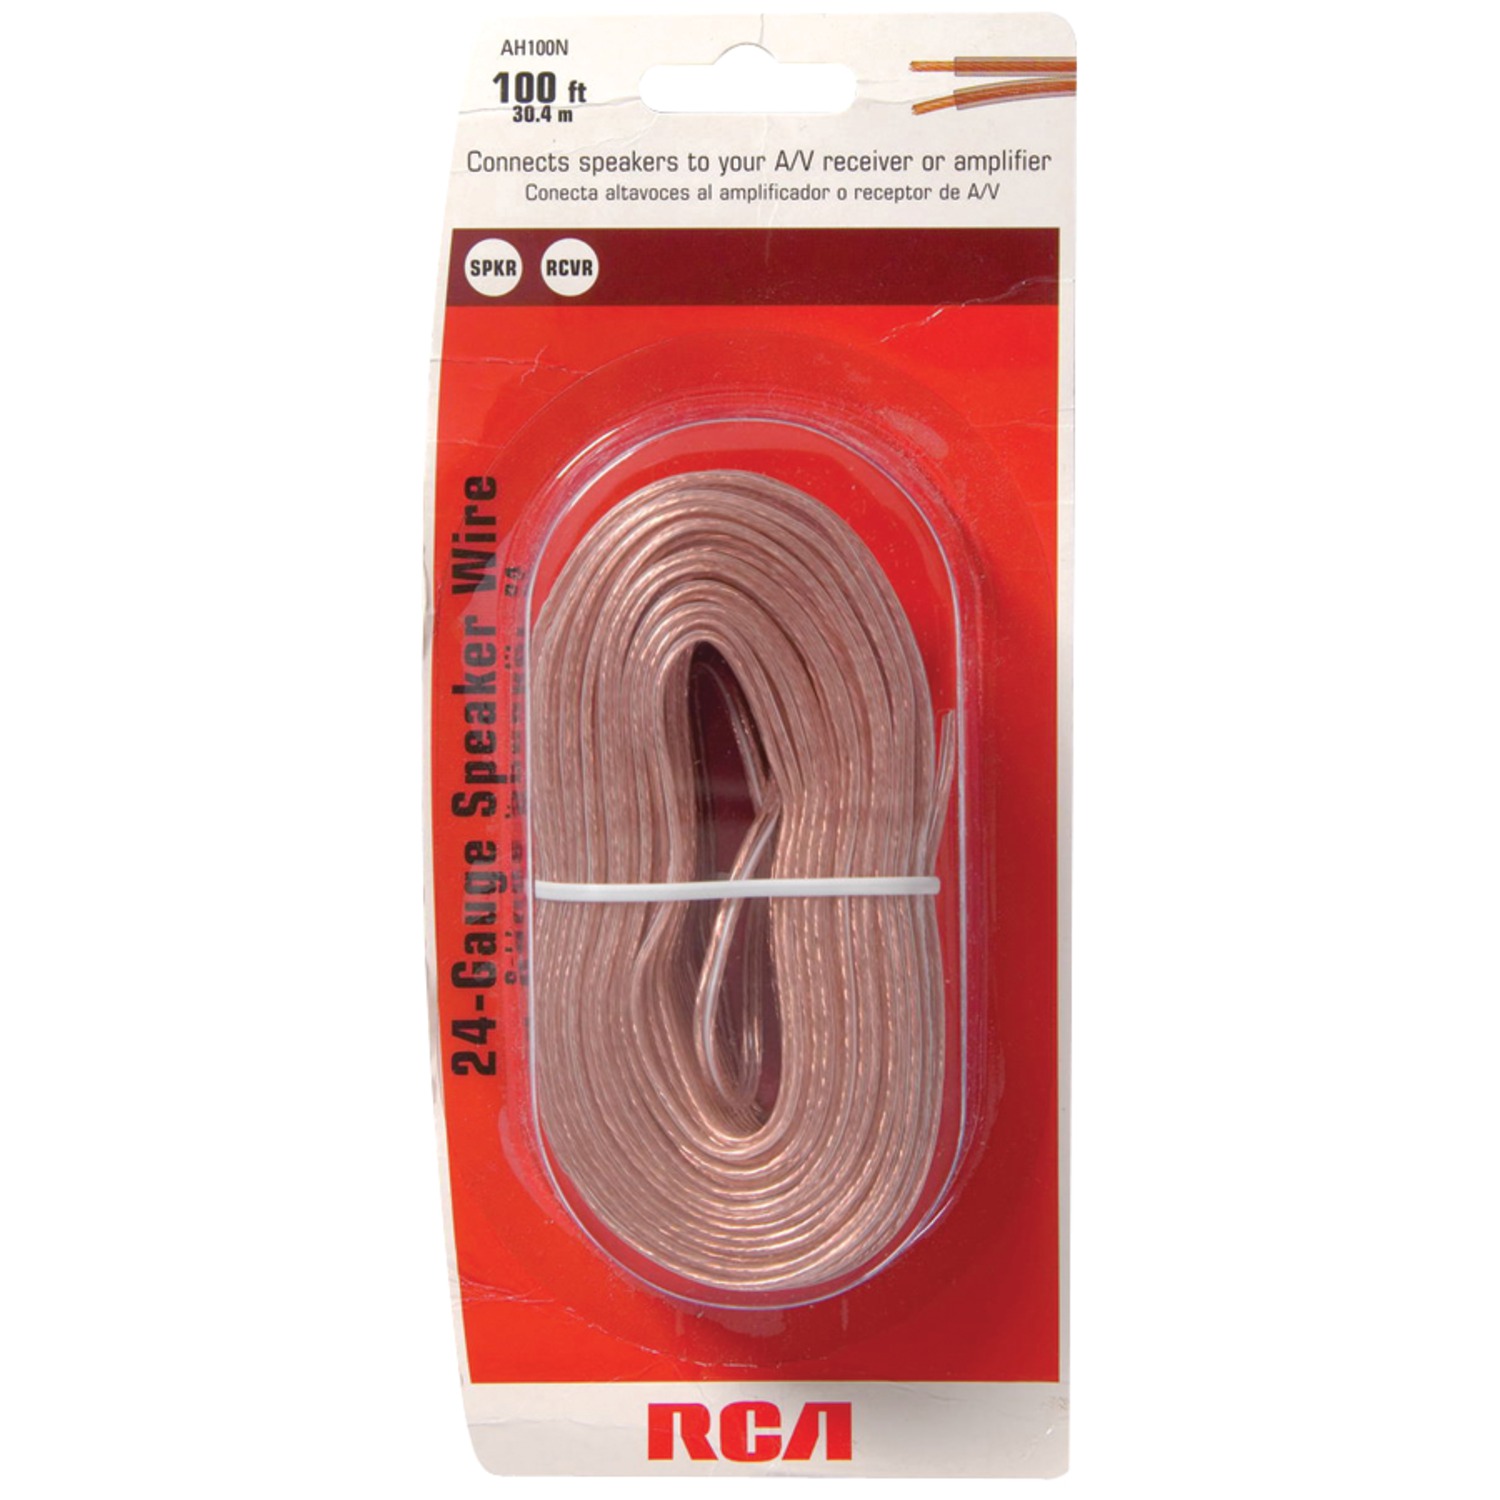 Rca Ah100r 24-gauge Speaker Wire, 100ft - image 2 of 2